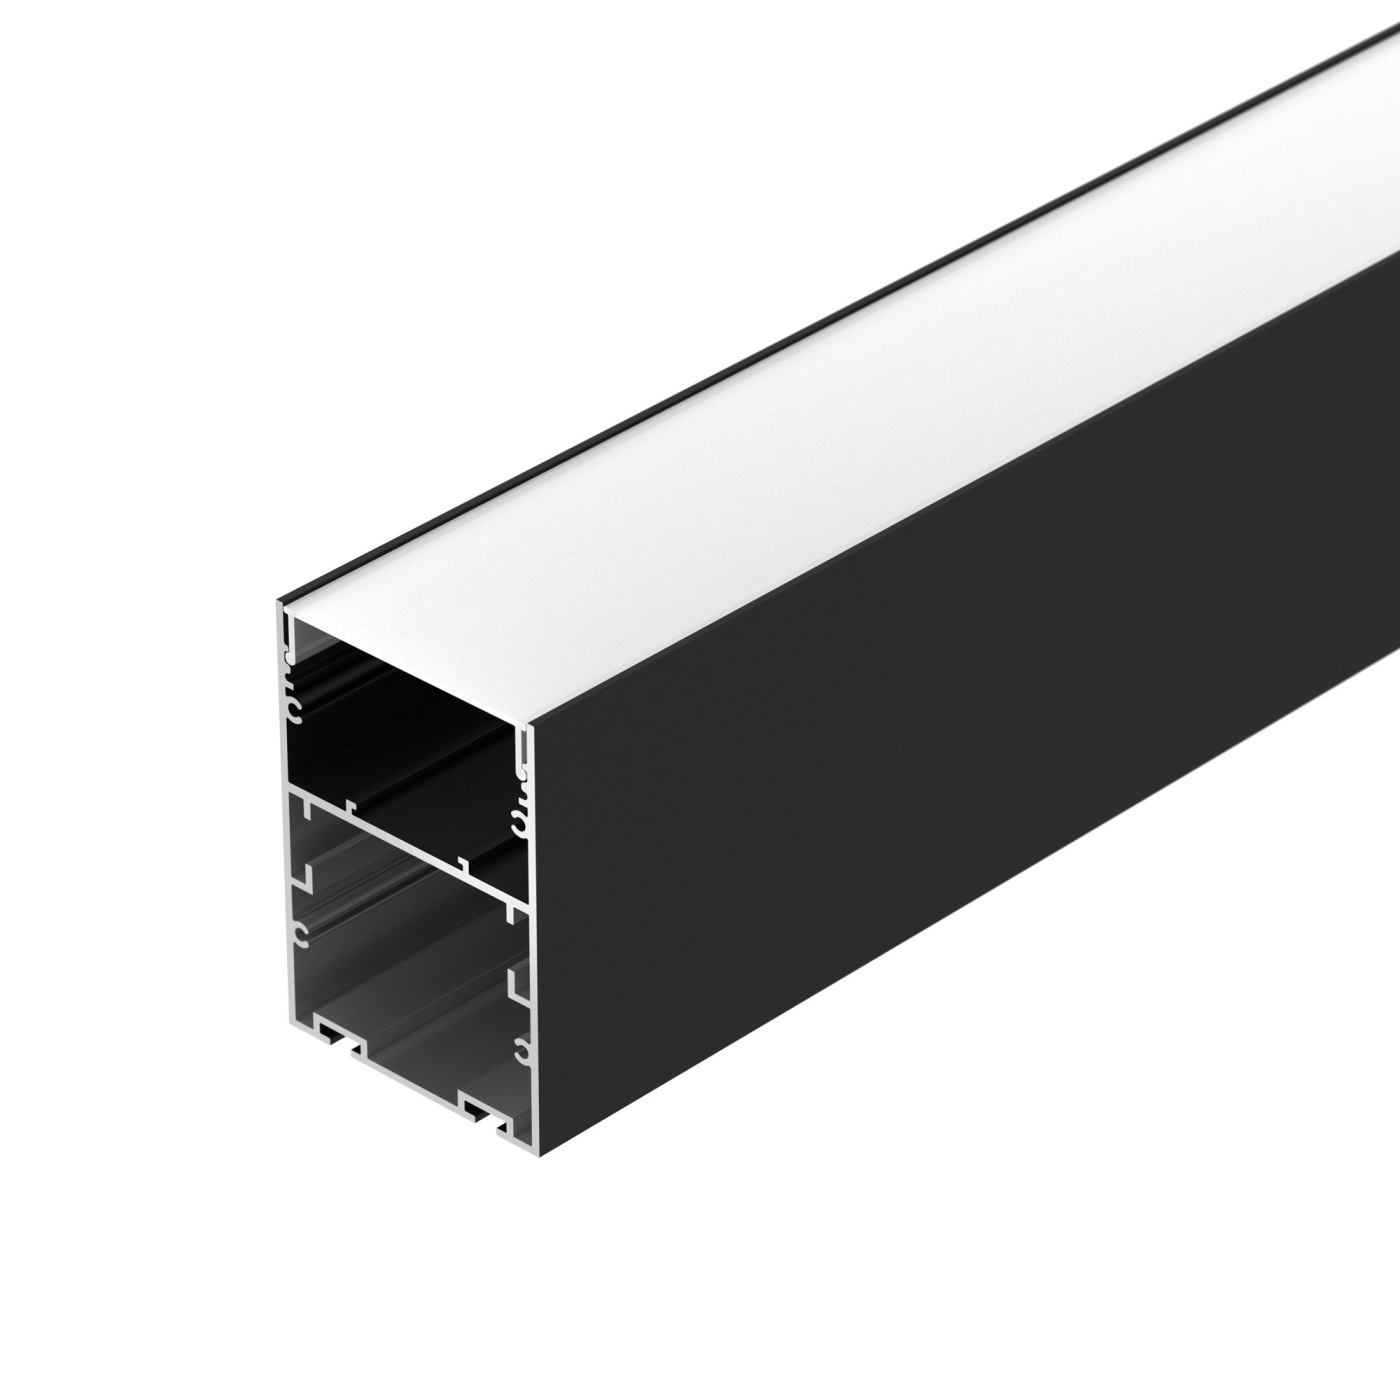 Профиль ARH-LINE-6085-2000 BLACK профиль алюминиевый накладной подвесной с отсеком для бп серебро cab267